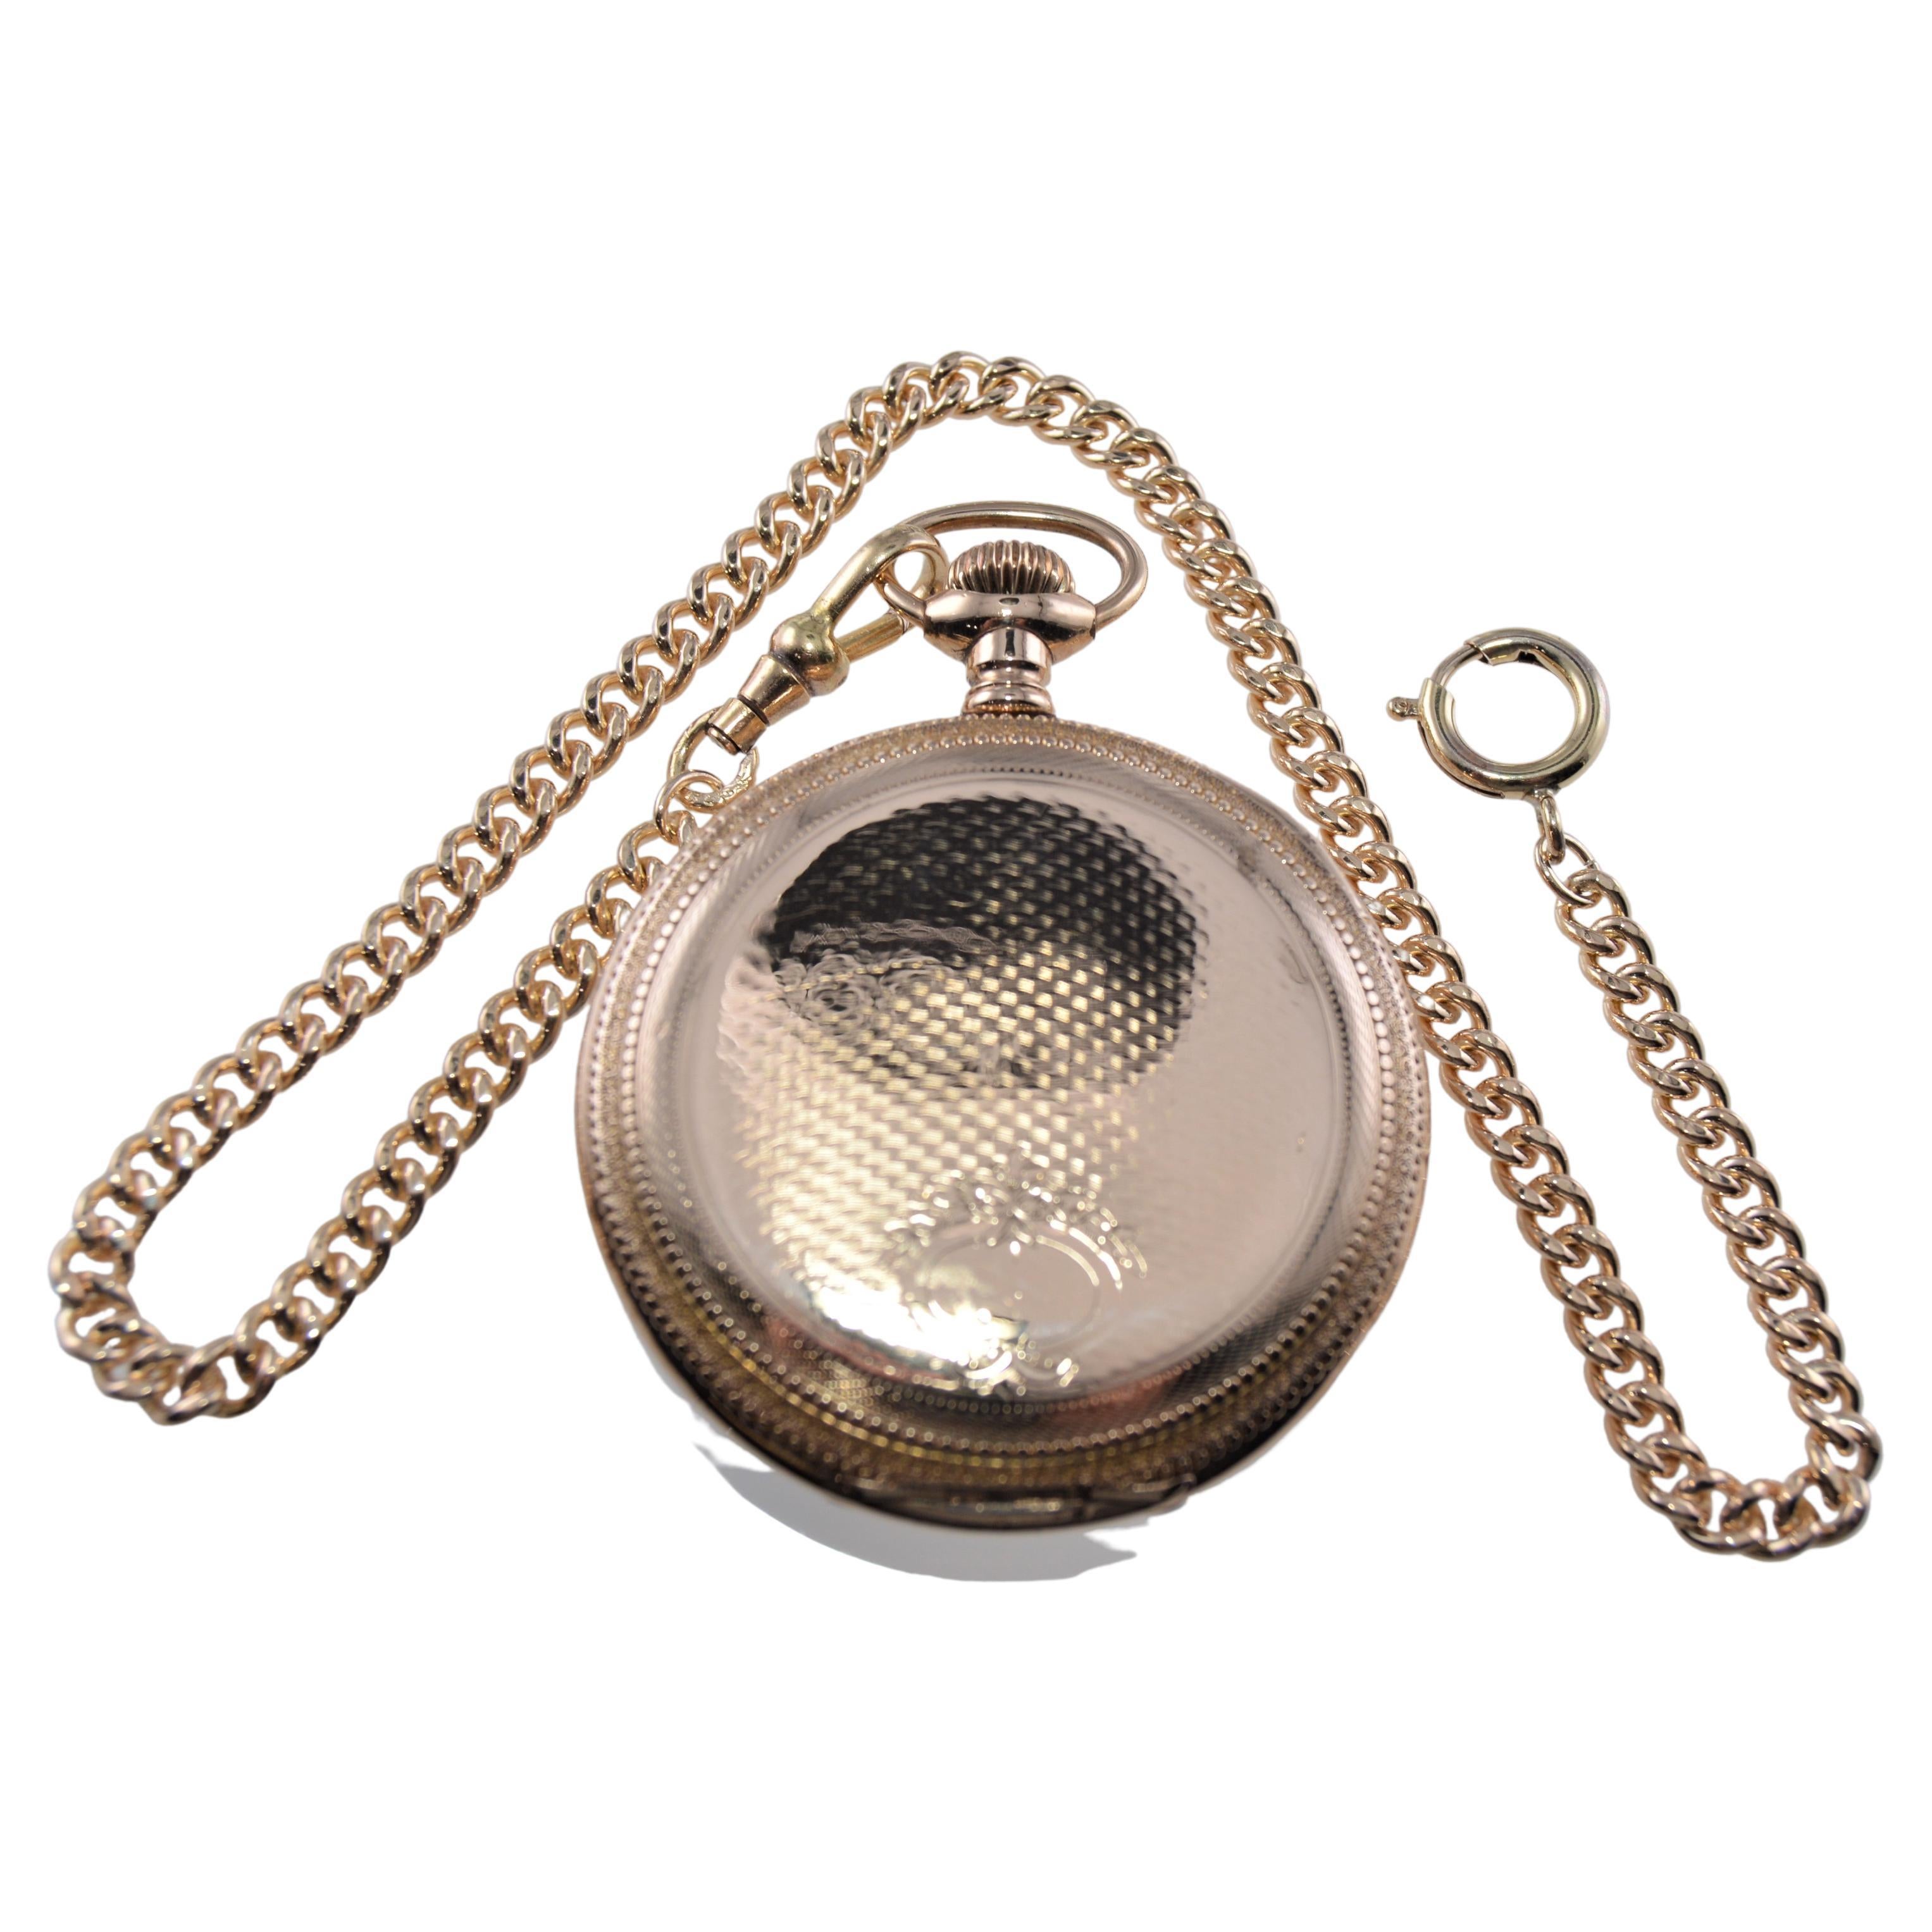 waltham antique pocket watch